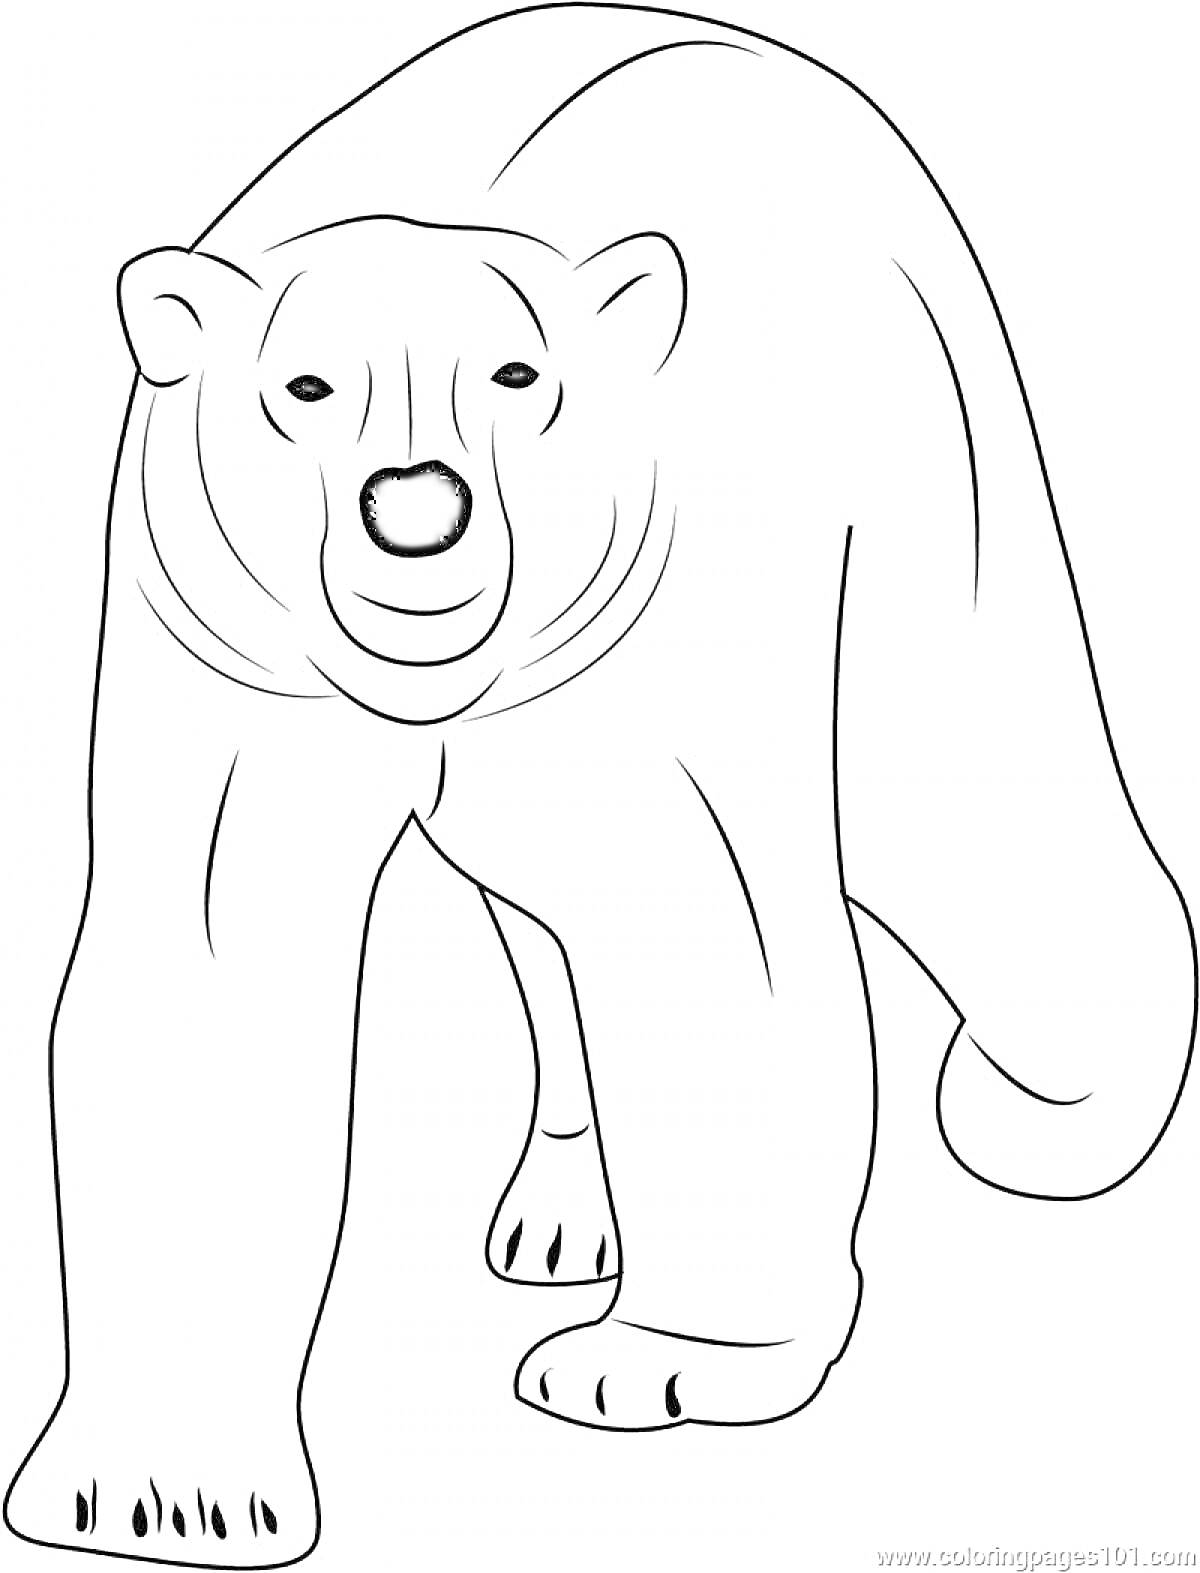 Раскраска Белый медведь, идущий на переднем плане